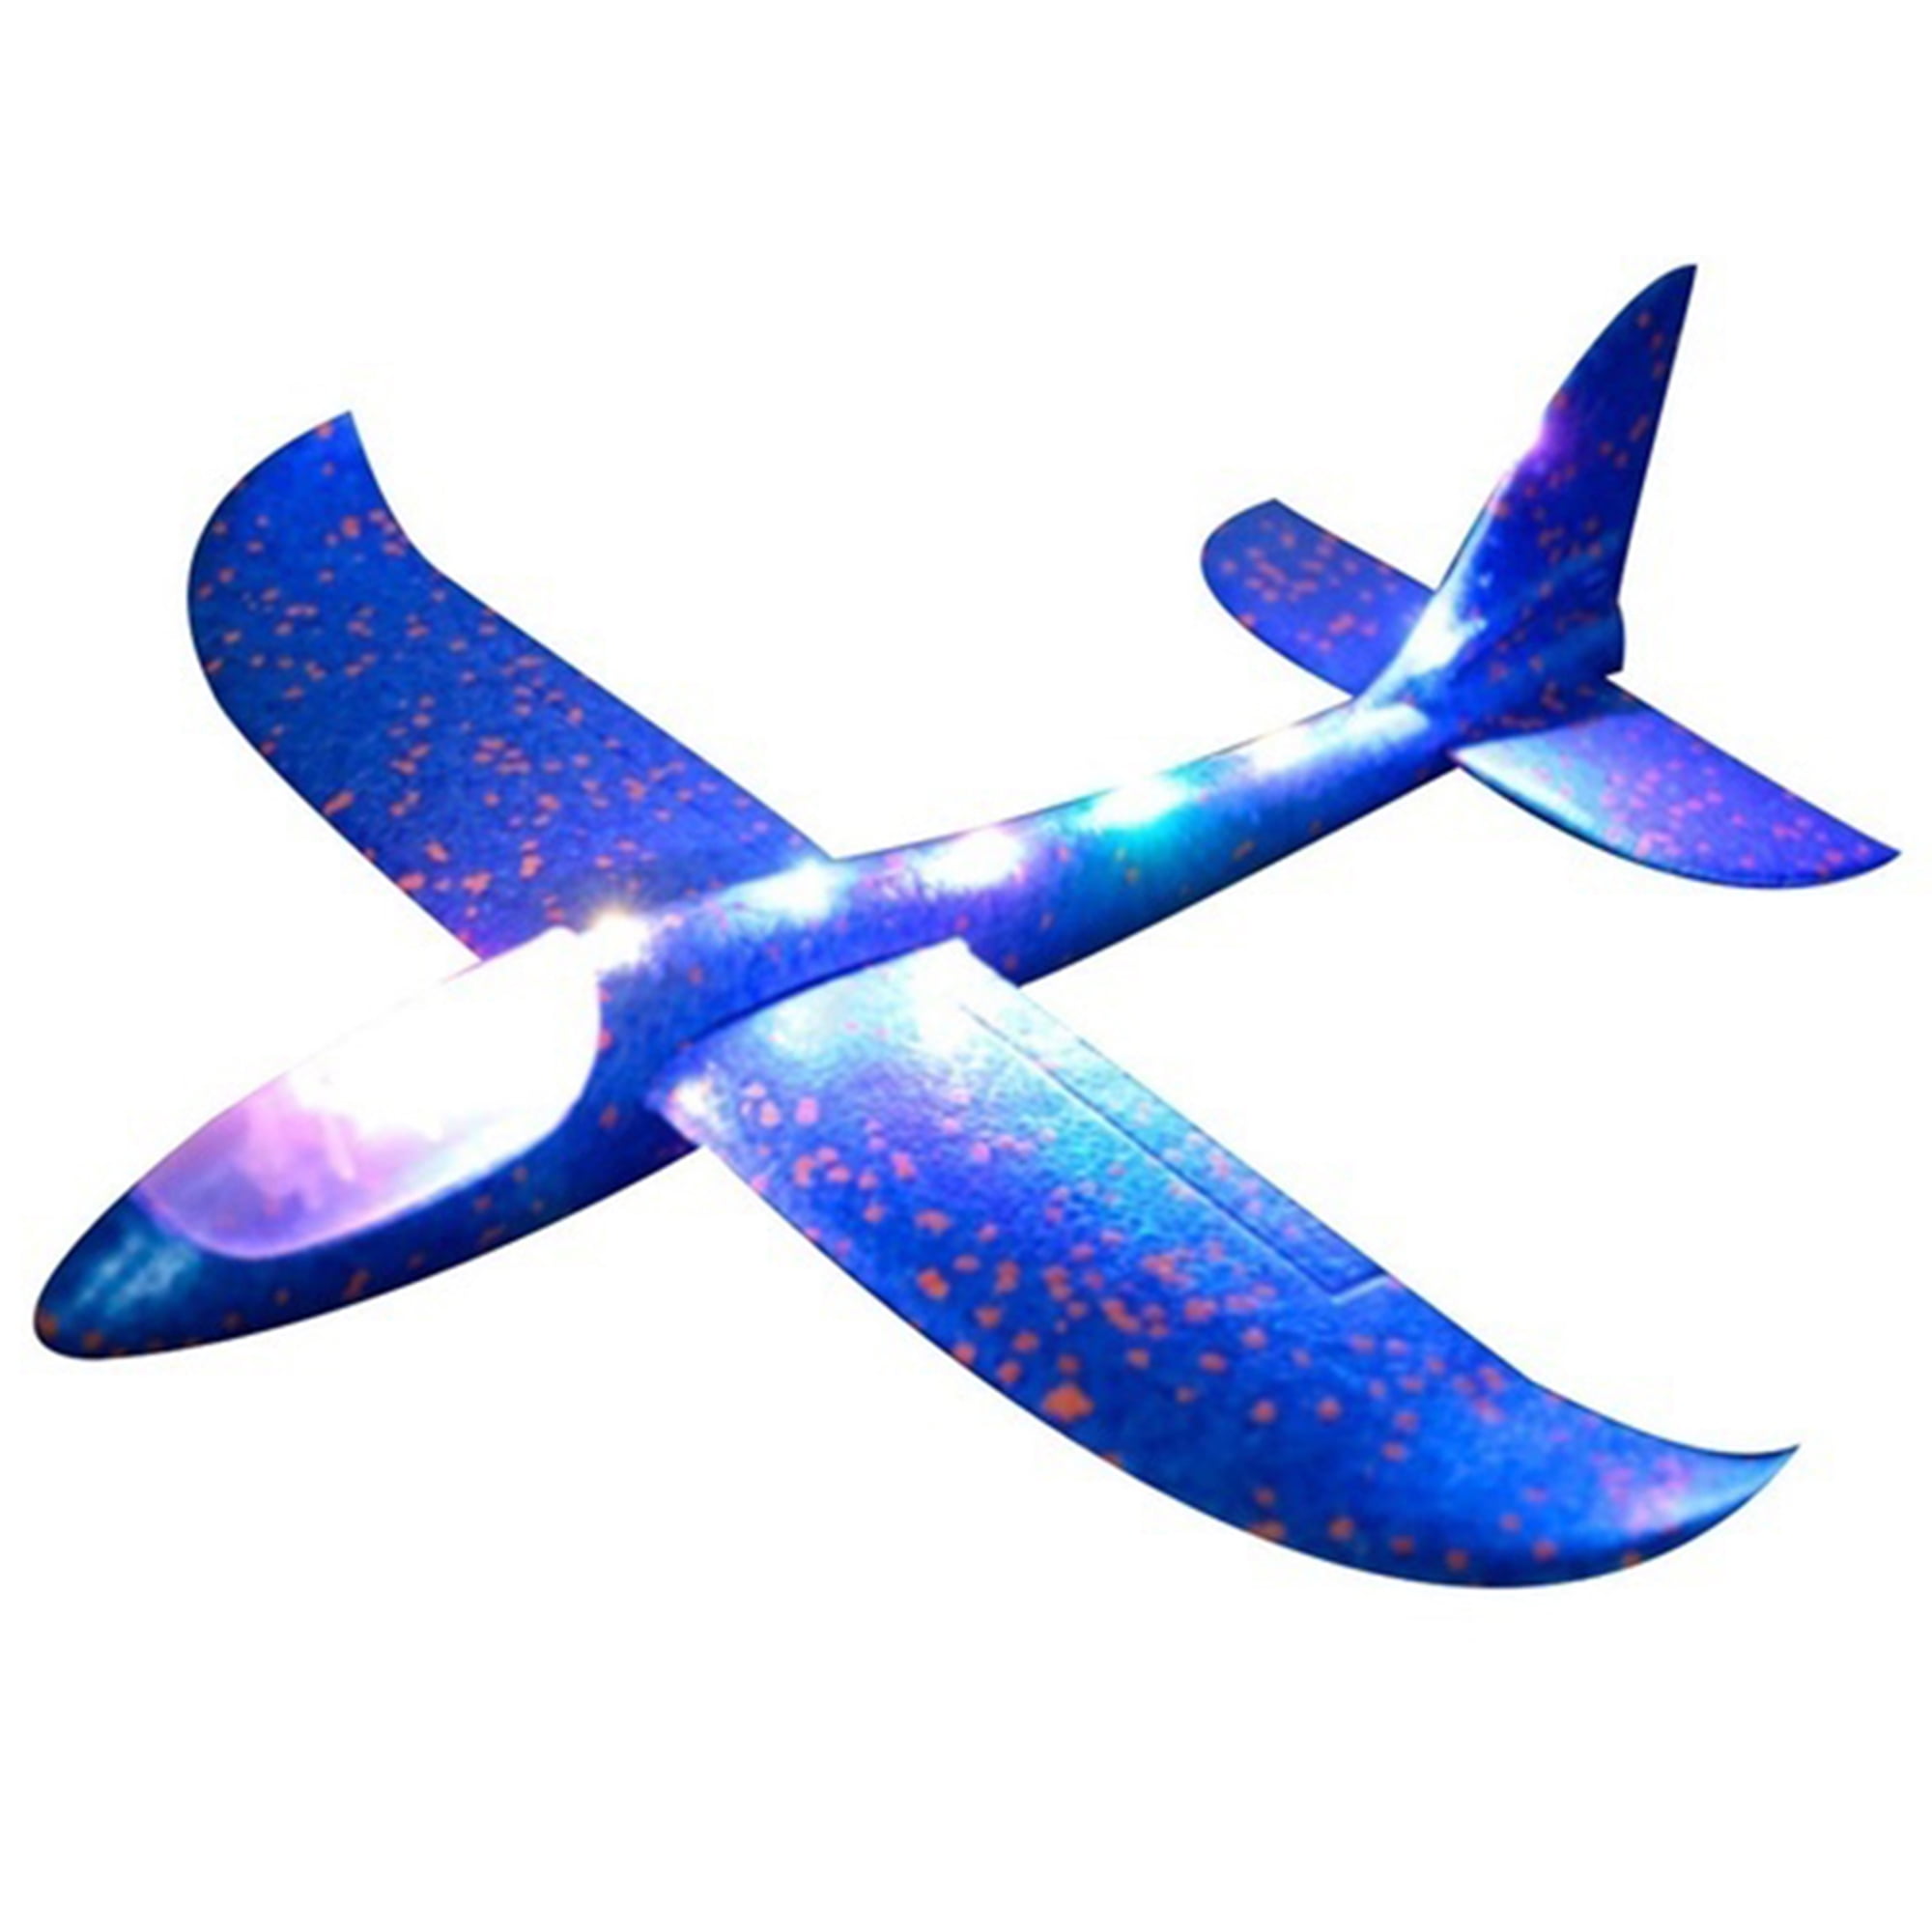 49*44cm EPP Foam Hand Throw Airplane Outdoor Launch Glider Plane Kids Toy JKUS 